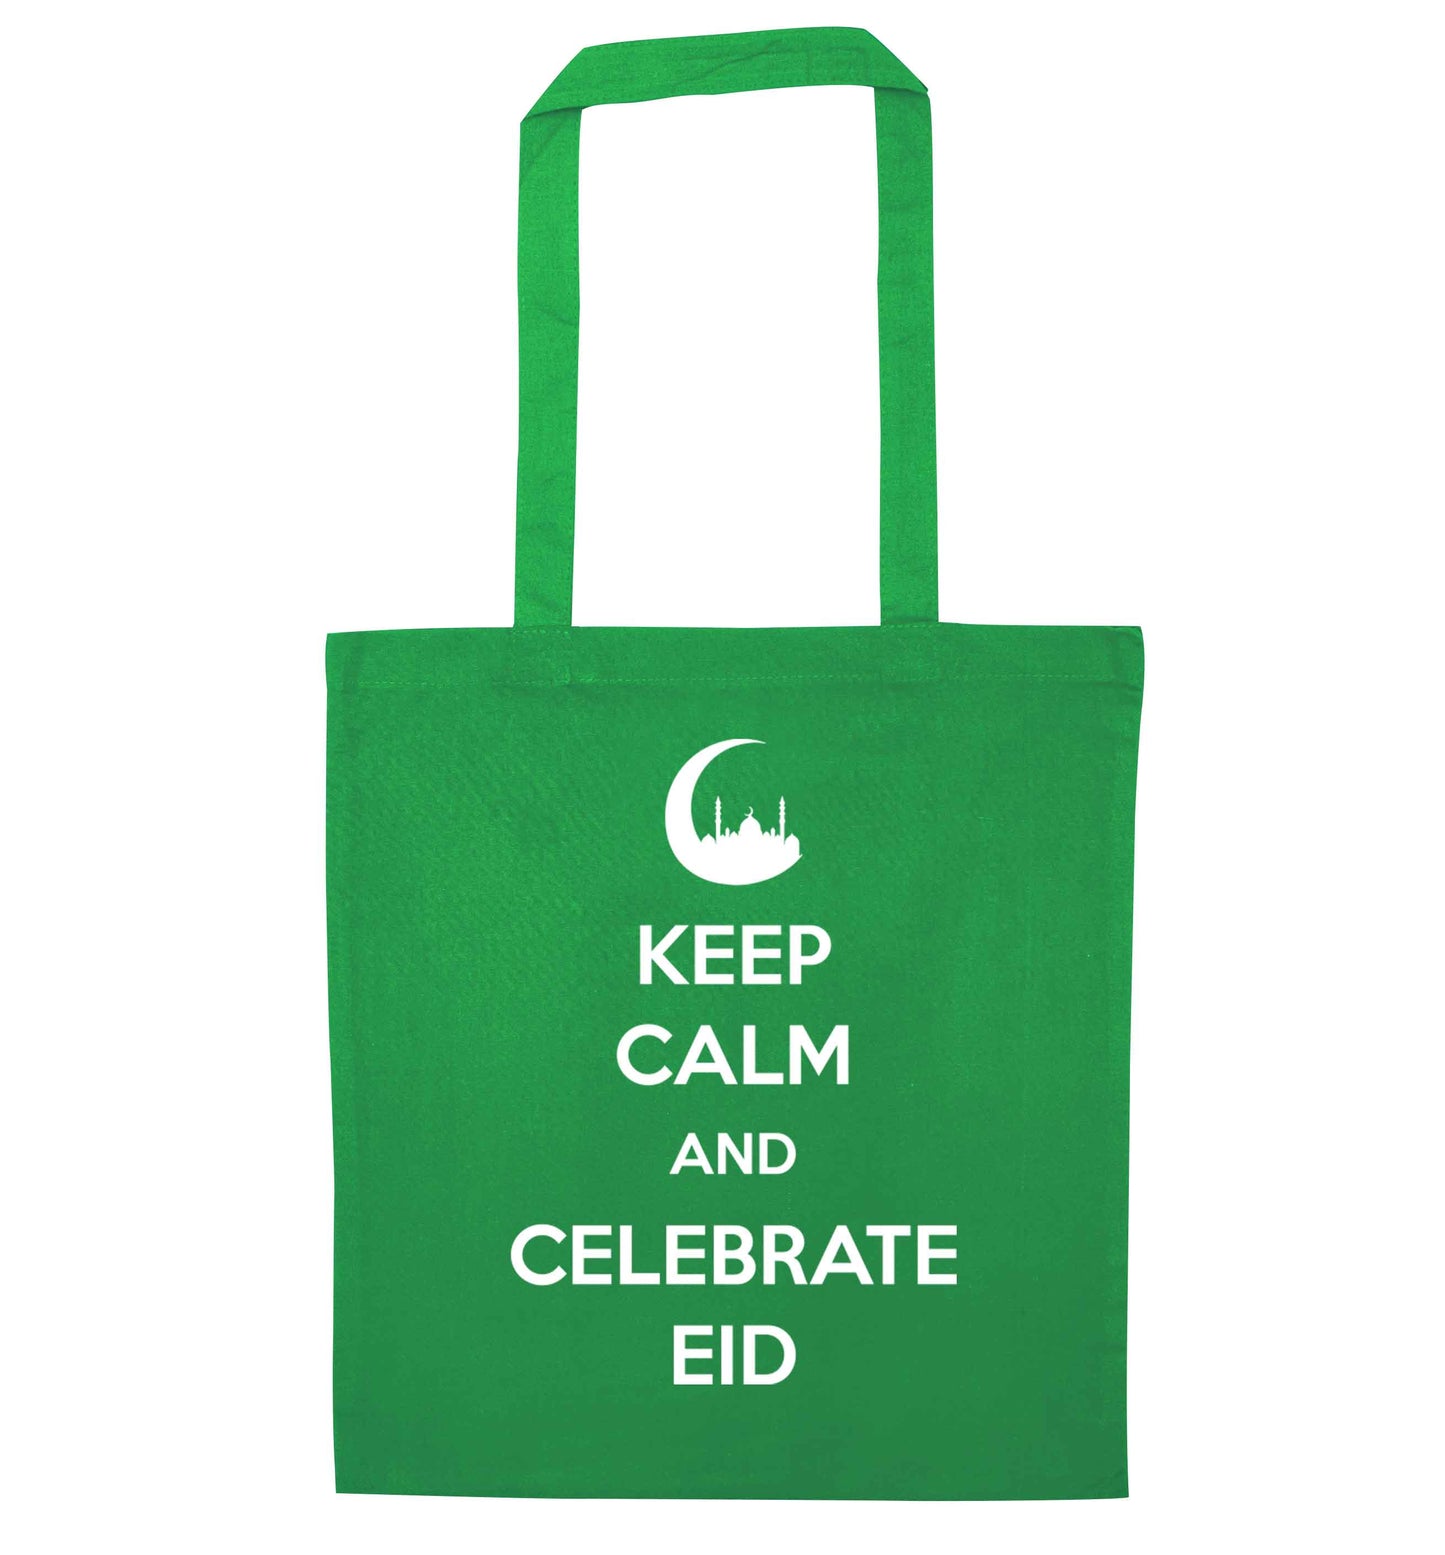 Keep calm and celebrate Eid green tote bag